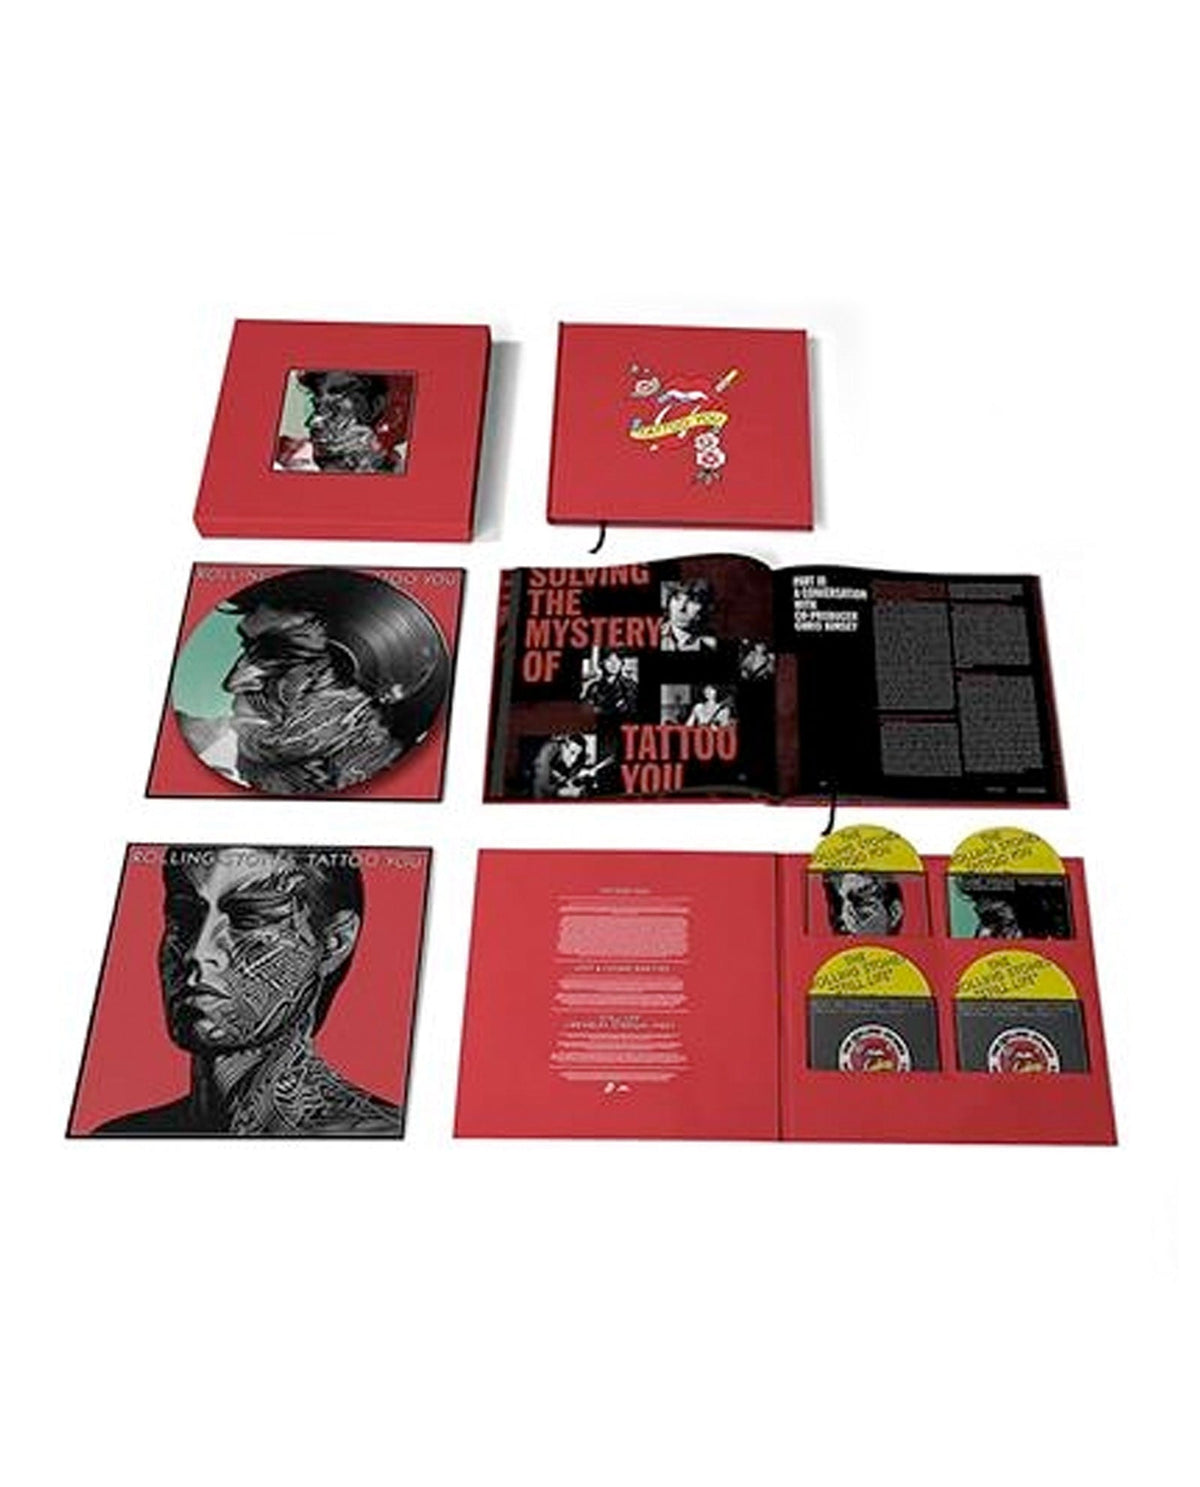 Tattoo You (40th Anniversary) Vinyl Box limitado - The Rolling Stones (5 Vinilos + Libro + Portada Lenticular) - Rocktud - Rocktud